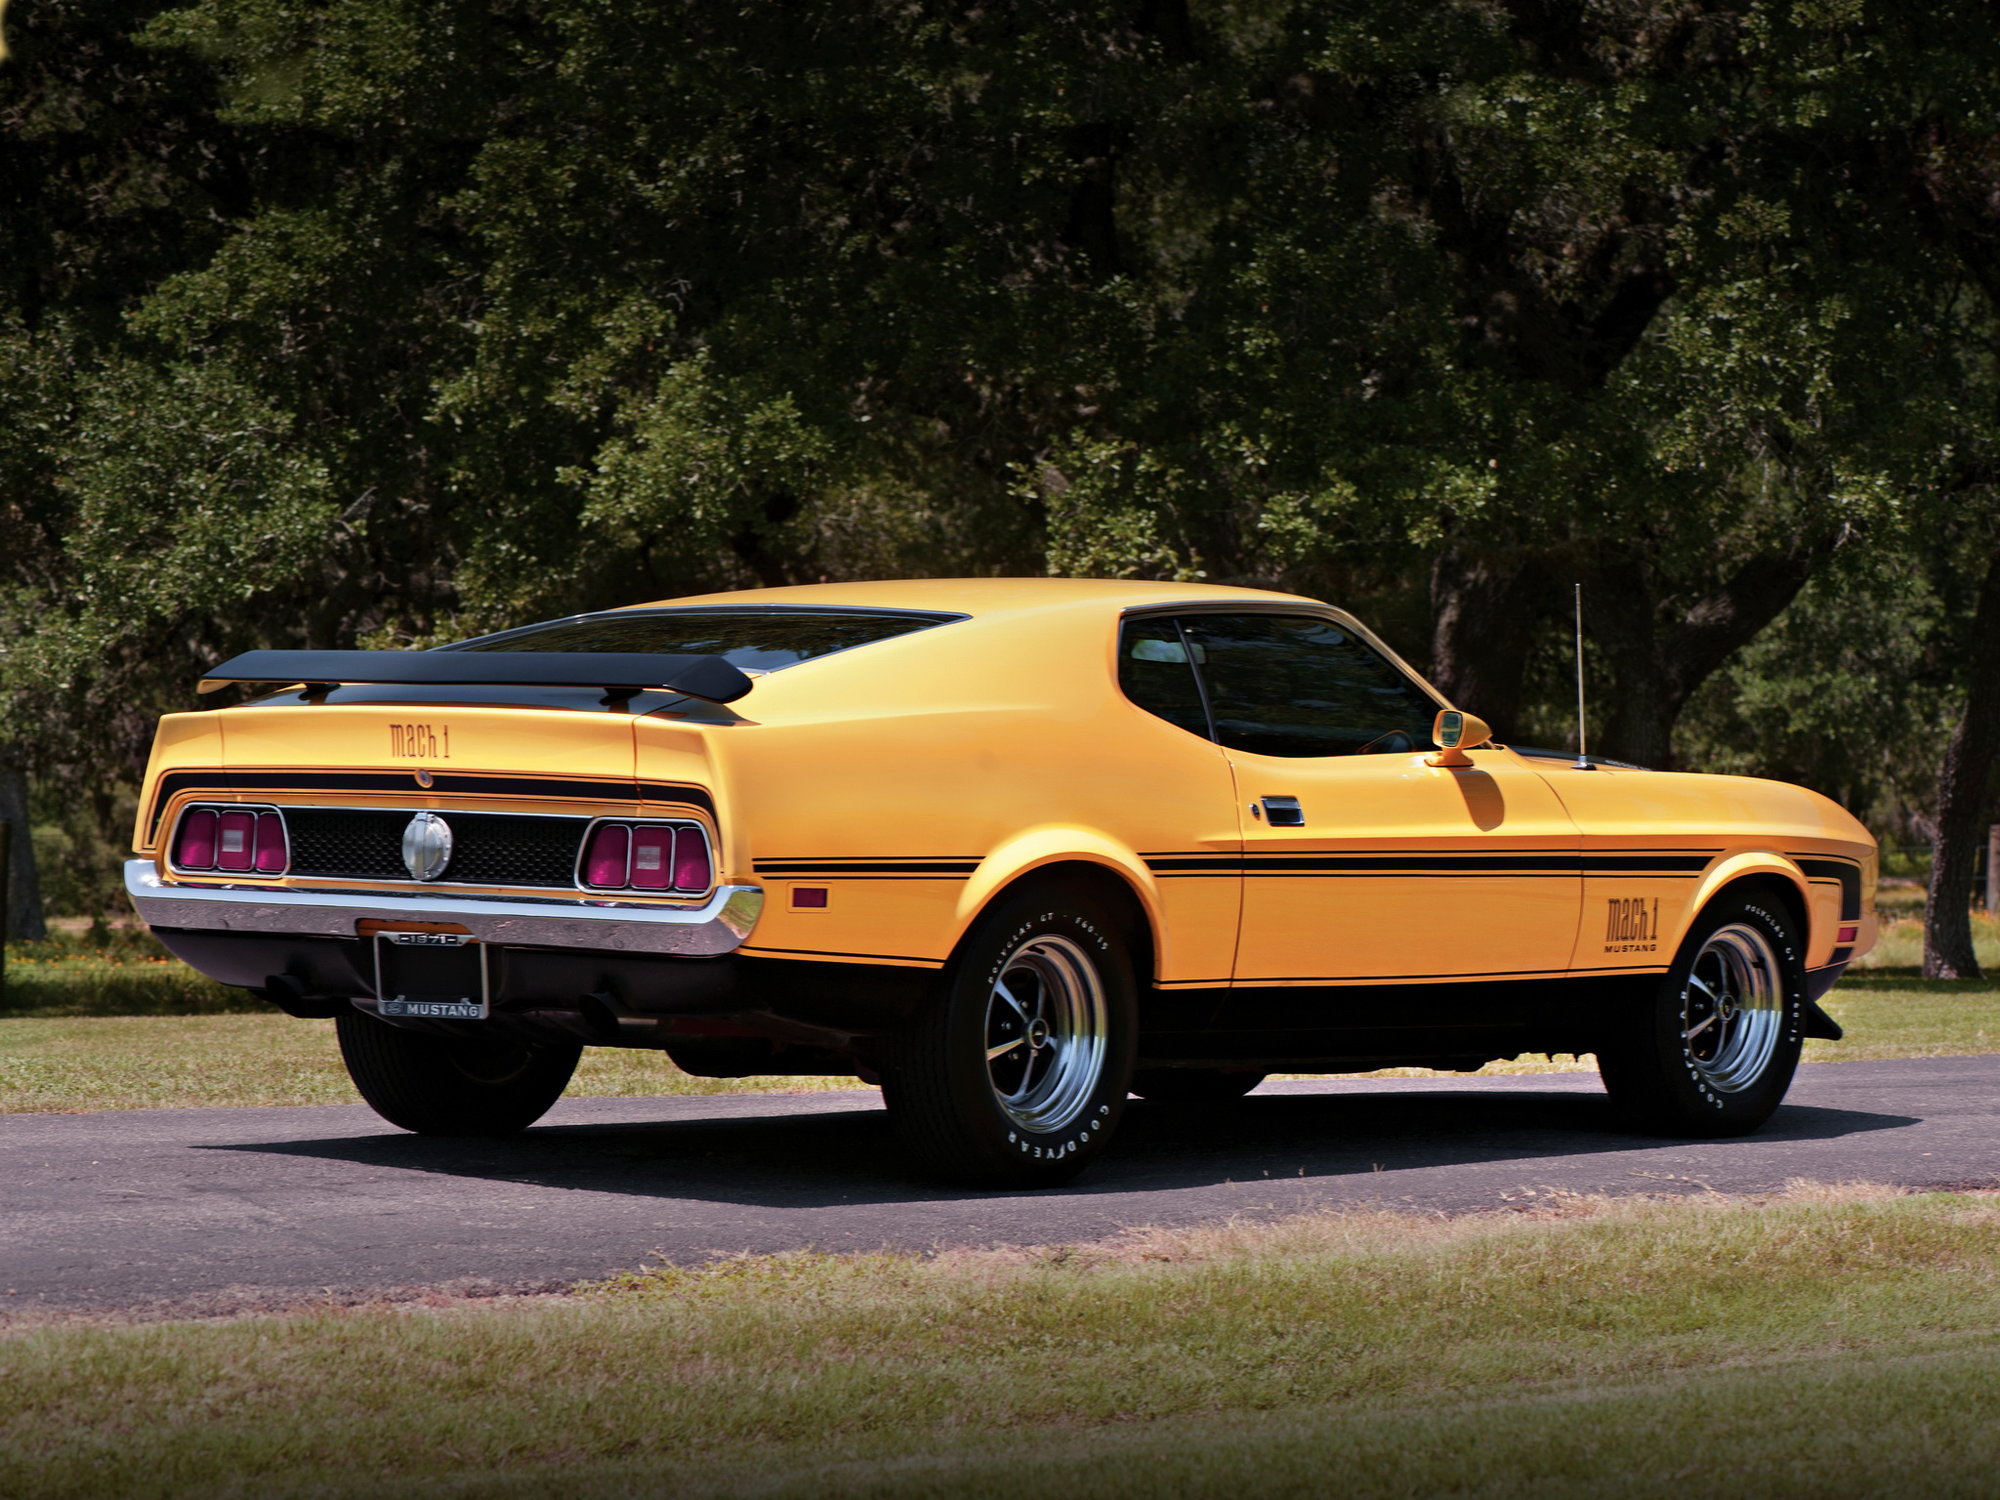 Původní "Eleanor" byl Ford Mustang Mach 1 z roku 1971, který však dostal masku z modelu 1973